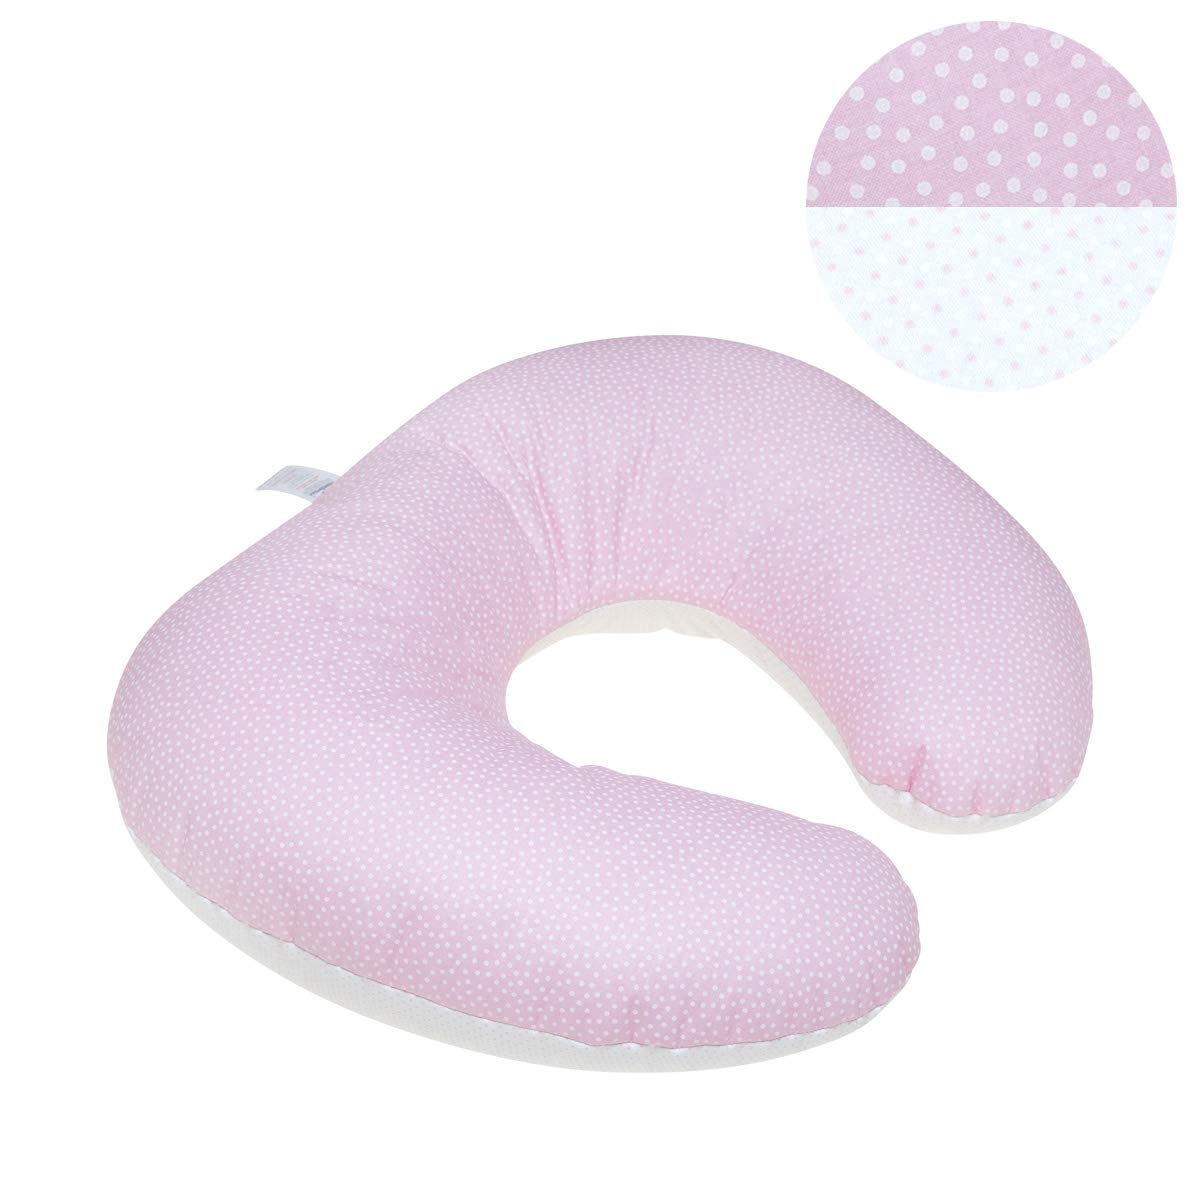 Cambrass Nursing Pillow 53 x 45 x 10 cm Pink